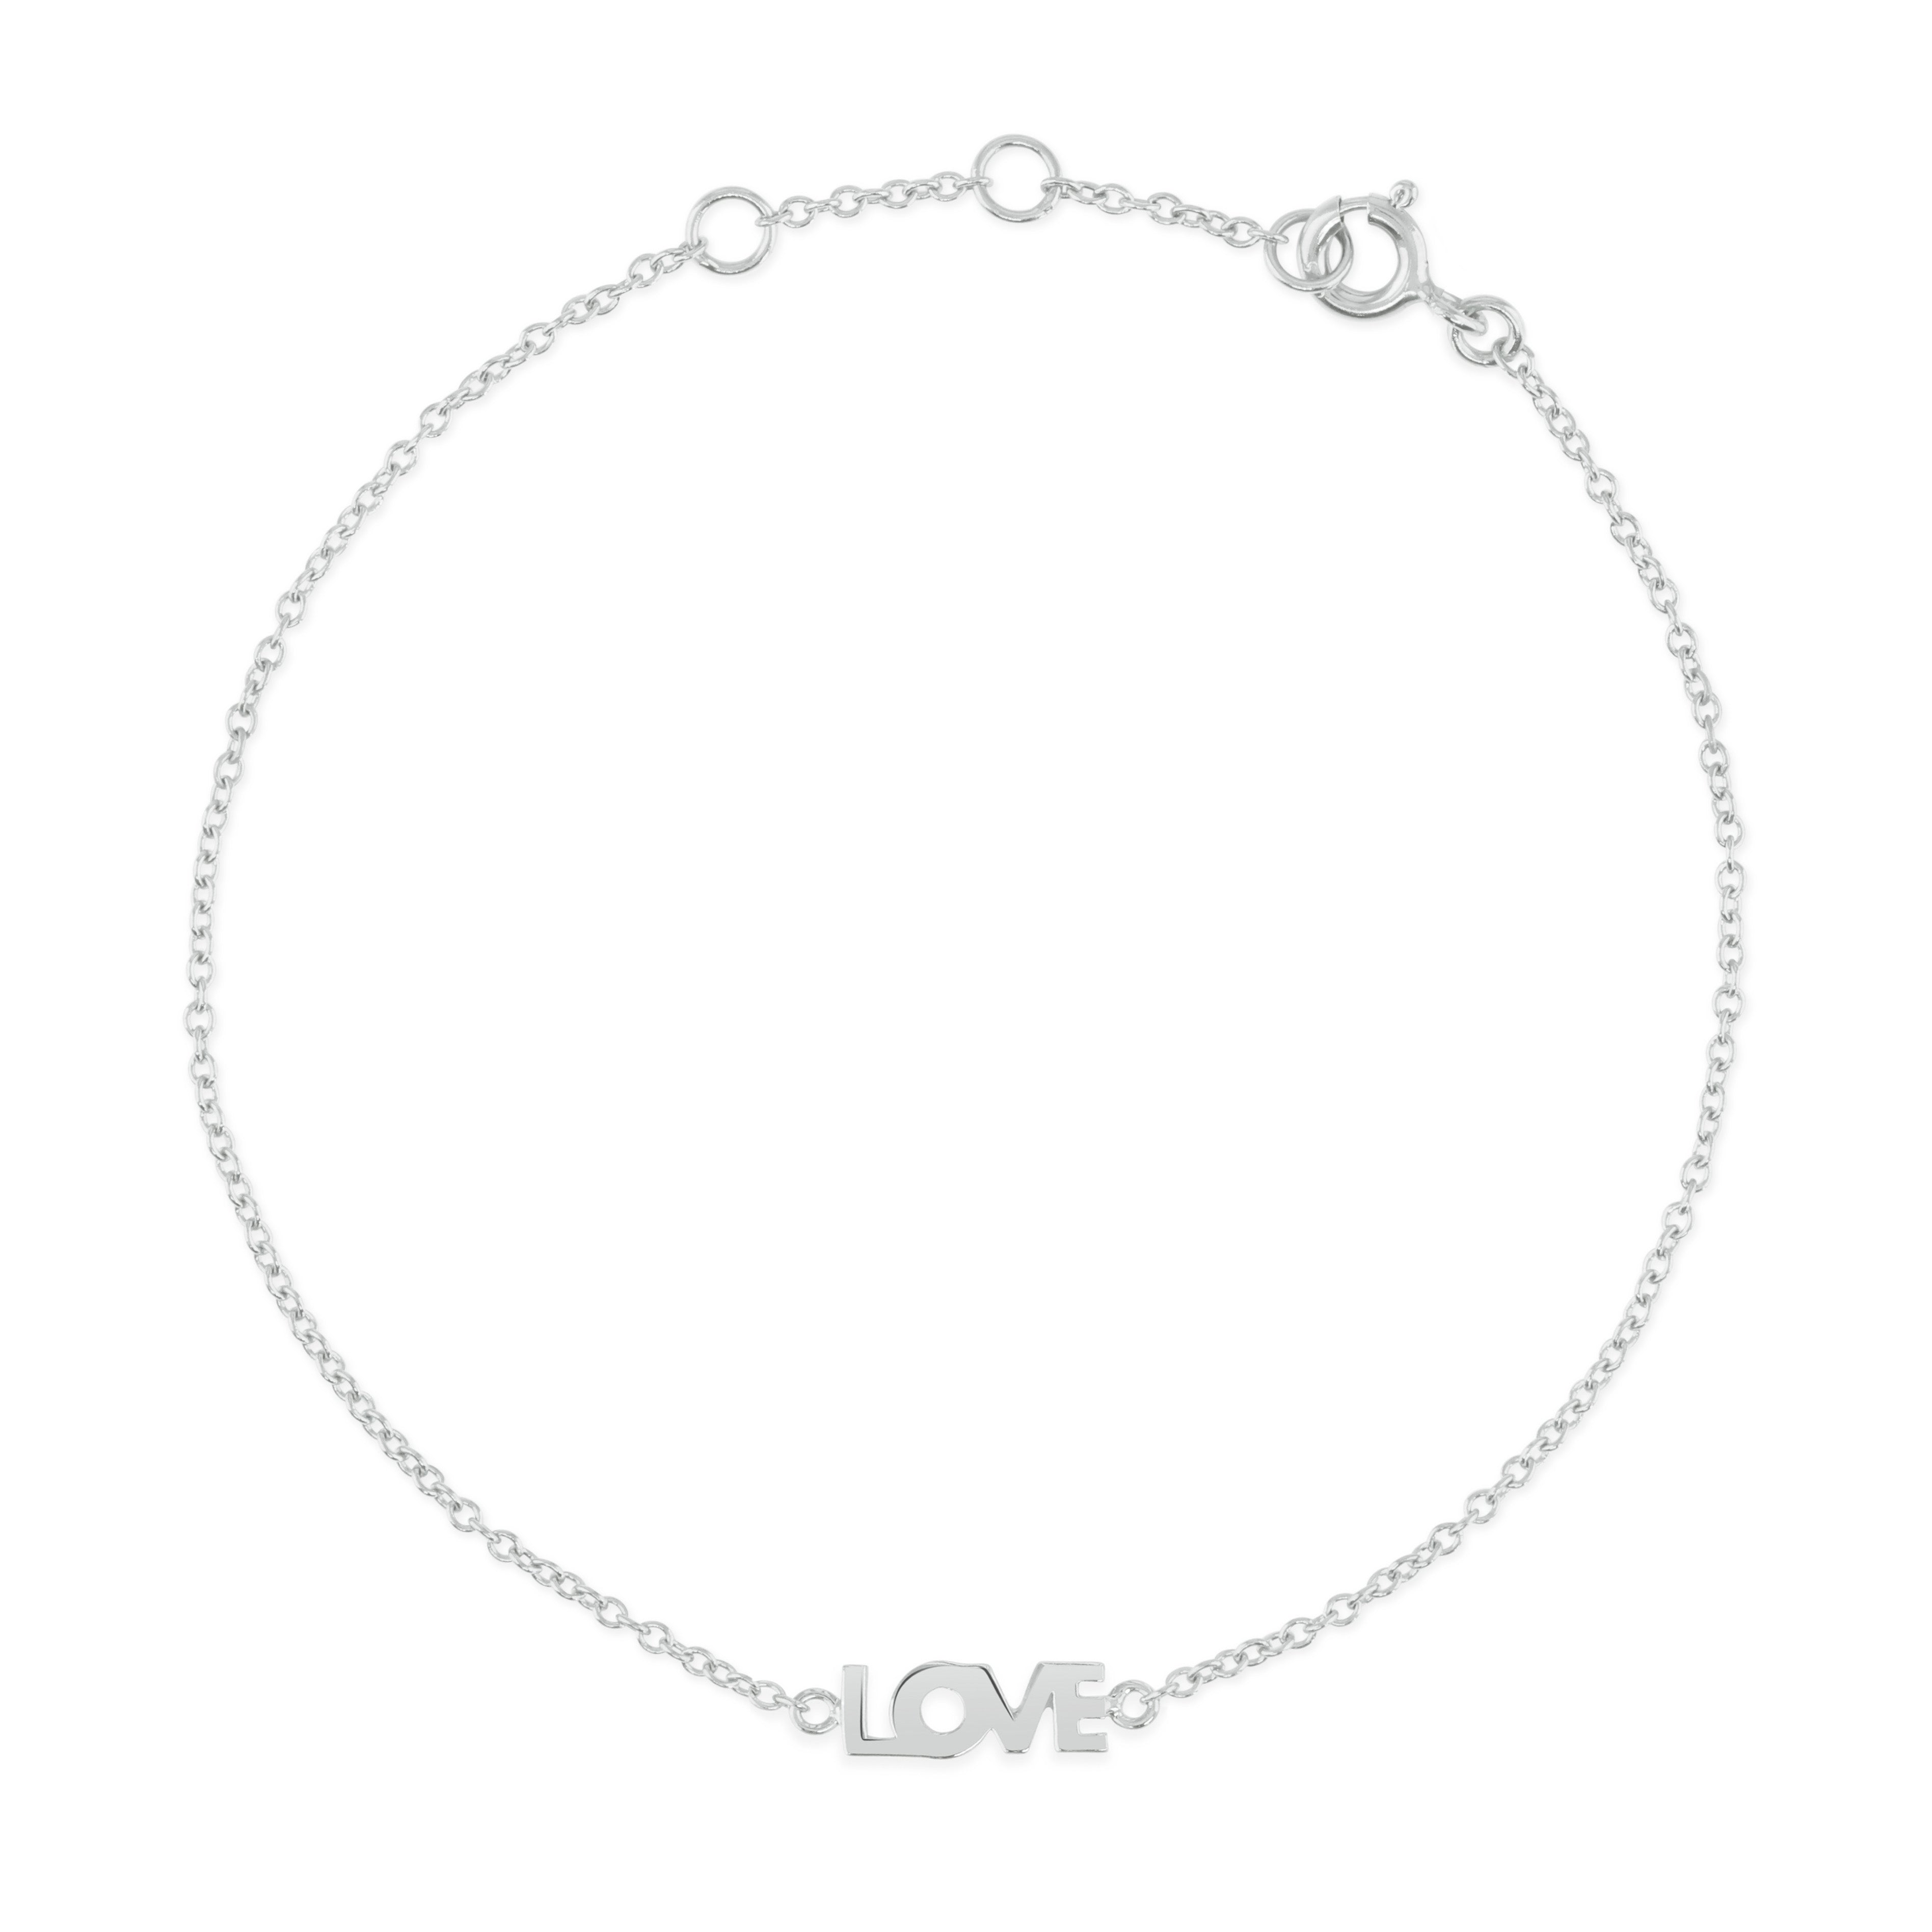 Silver Rachel Stevens Love Bracelet